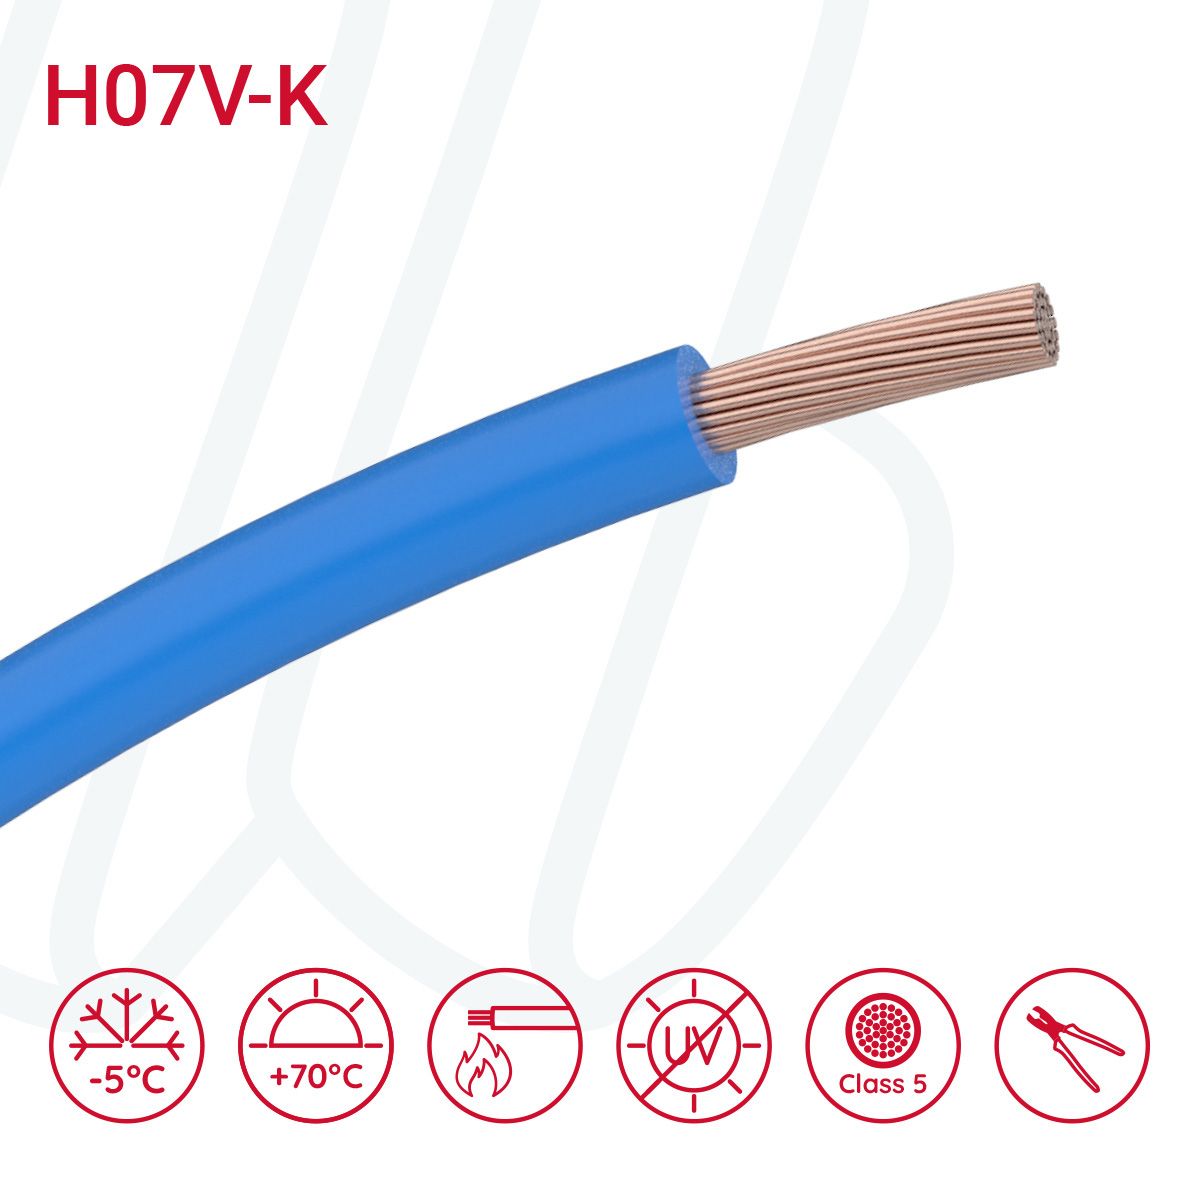 Провід монтажний гнучкий H07V-K 35 мм² блакитний, 01, 35